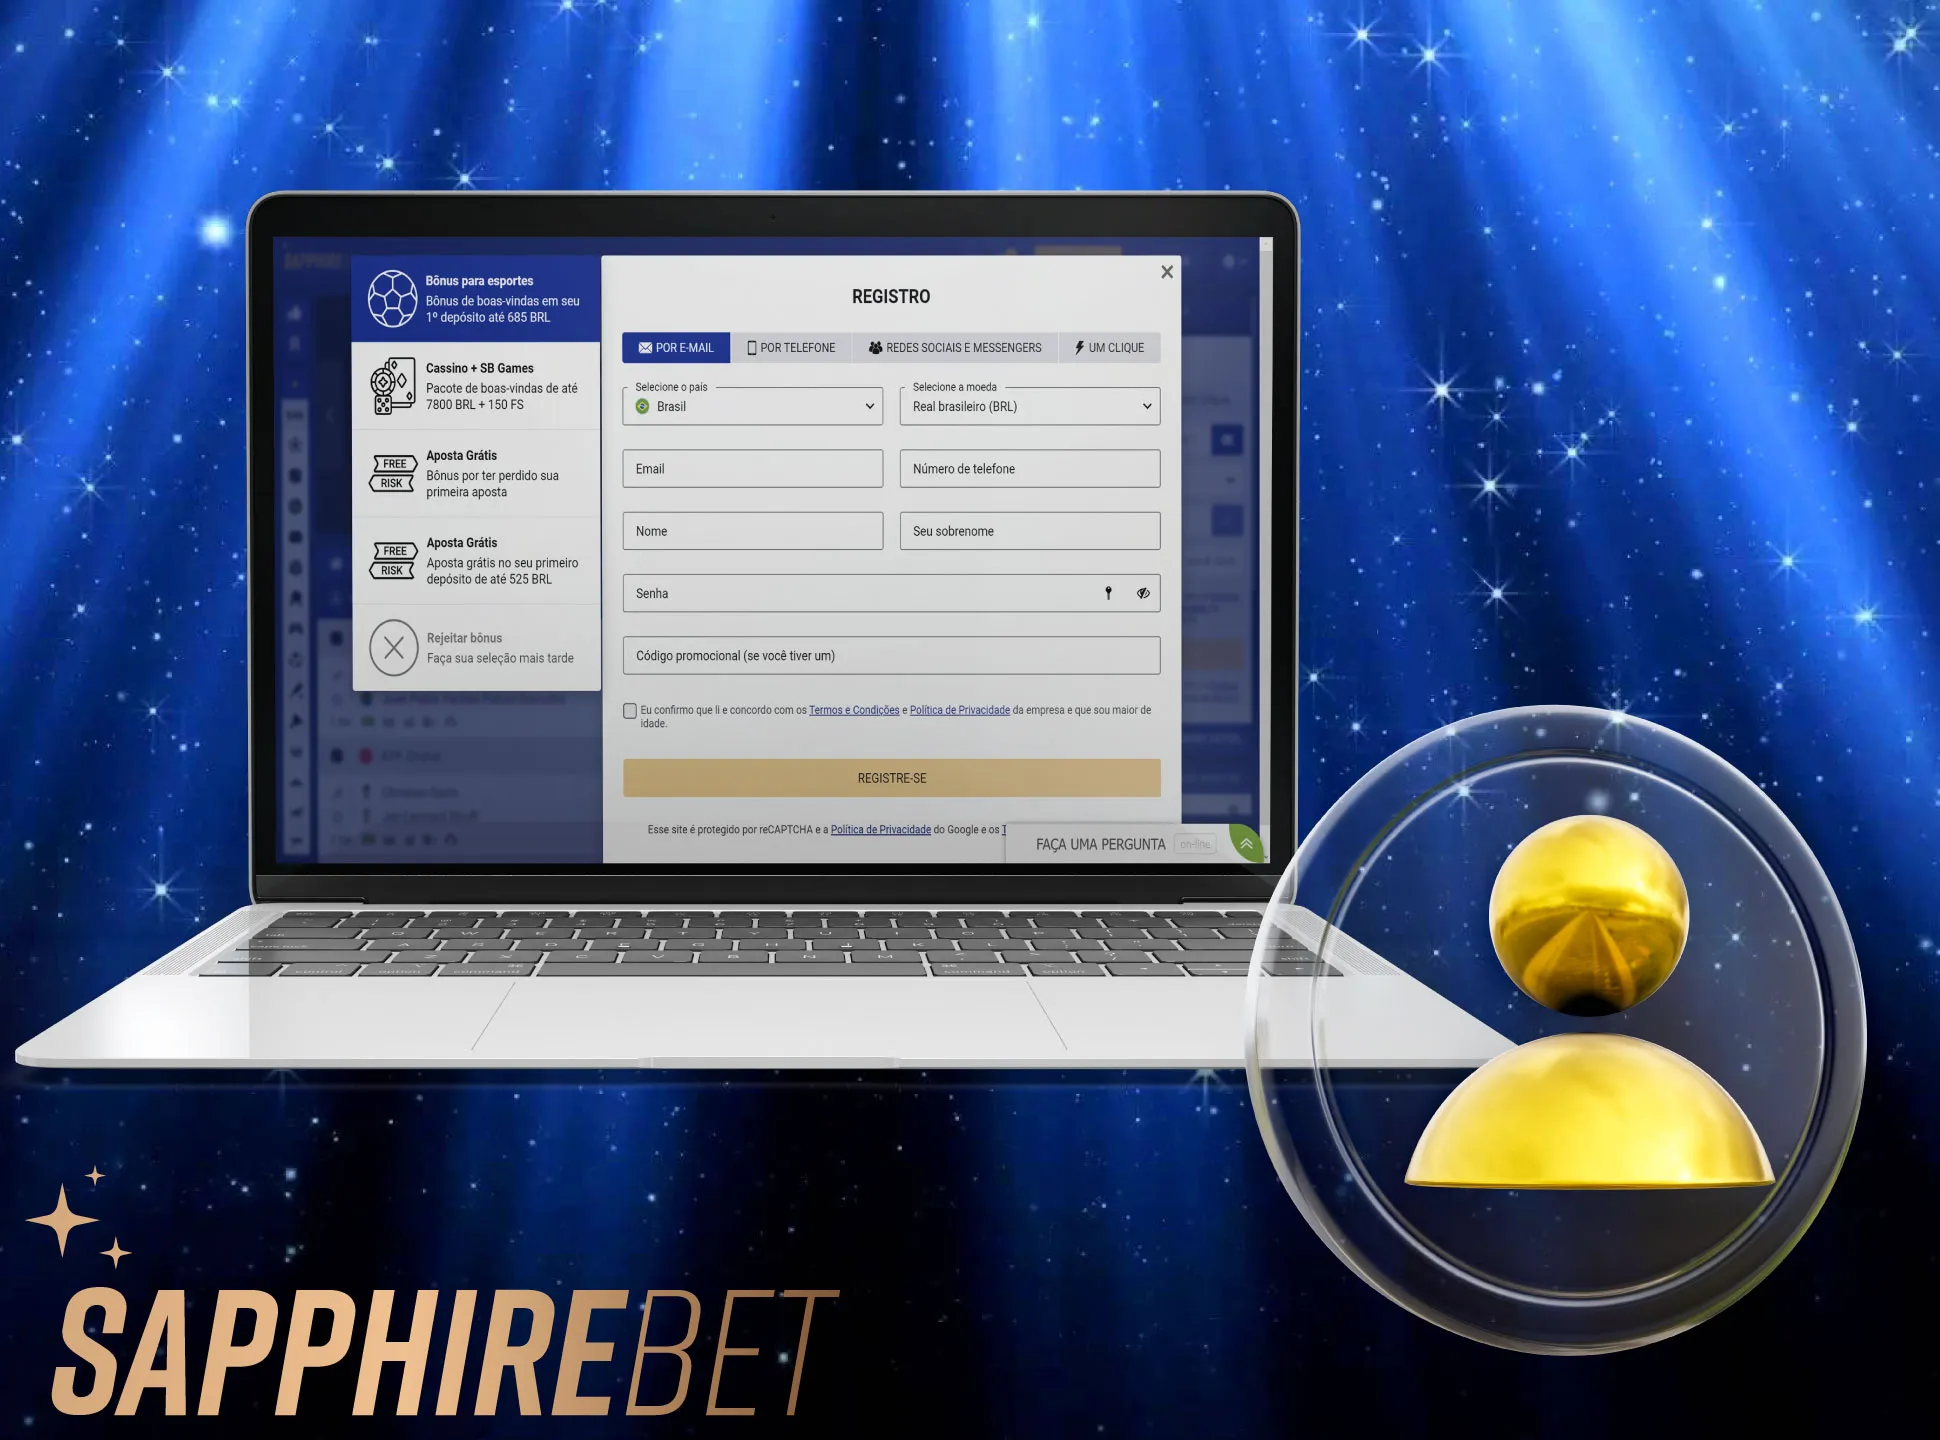 Abra o site oficial da Sapphirebet e registre-se para criar sua conta pessoal.